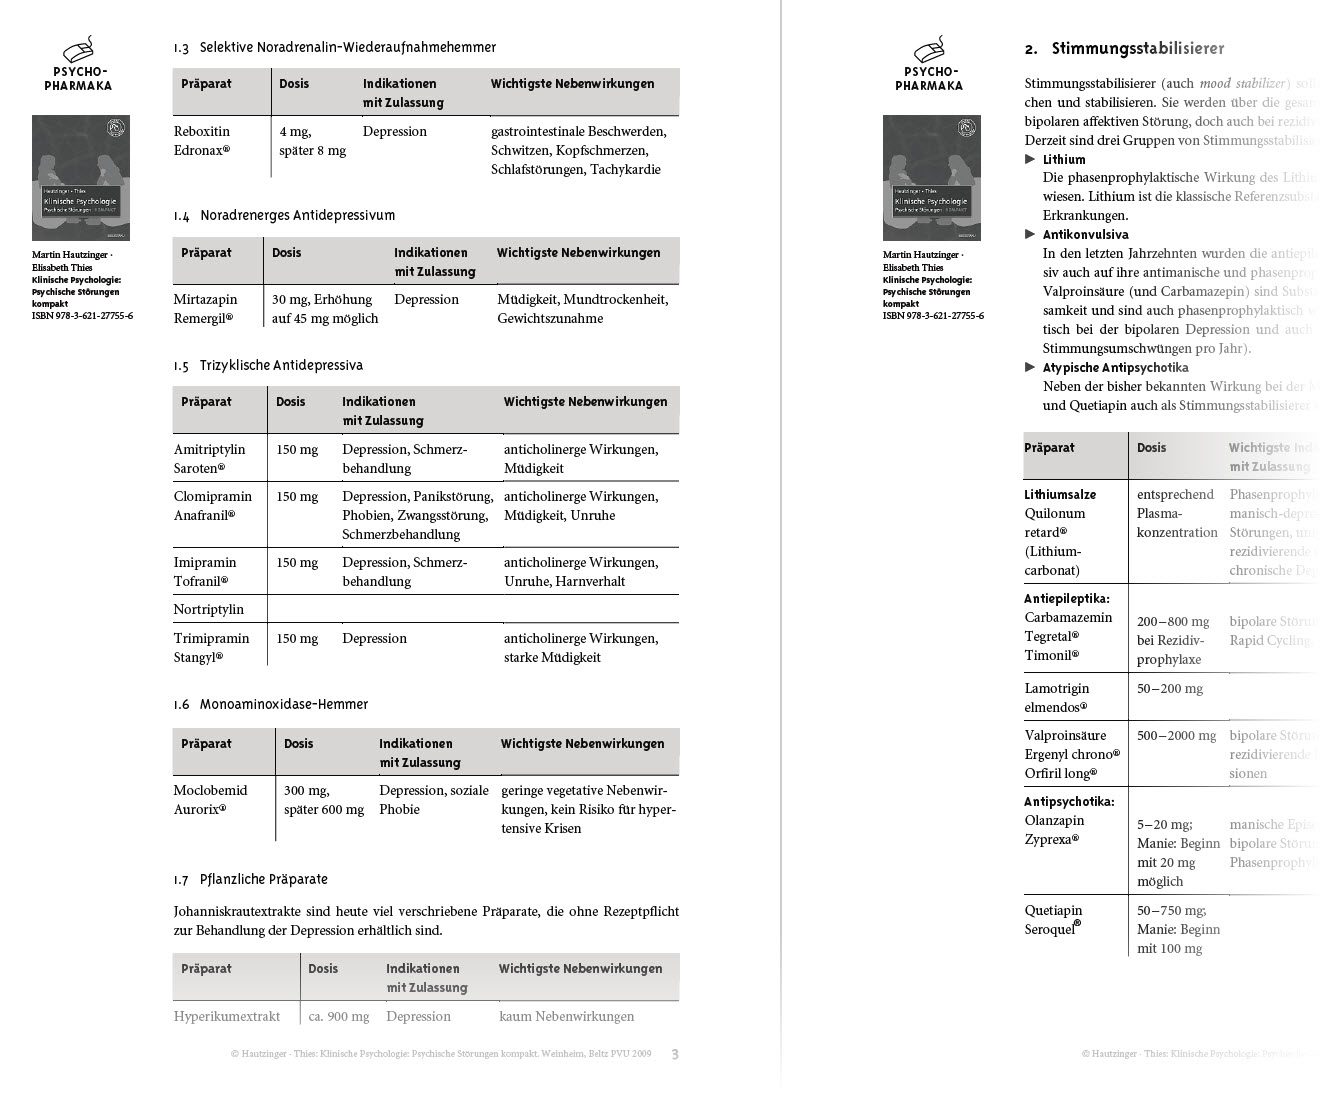 Eine schöner Übersicht und Psychopharmaka Liste findet sich auch in diesem PDF des Beltz Verlags: https://www.beltz.de/fileadmin/beltz/downloads/kompakt/127755-Psychopharmaka.pdf